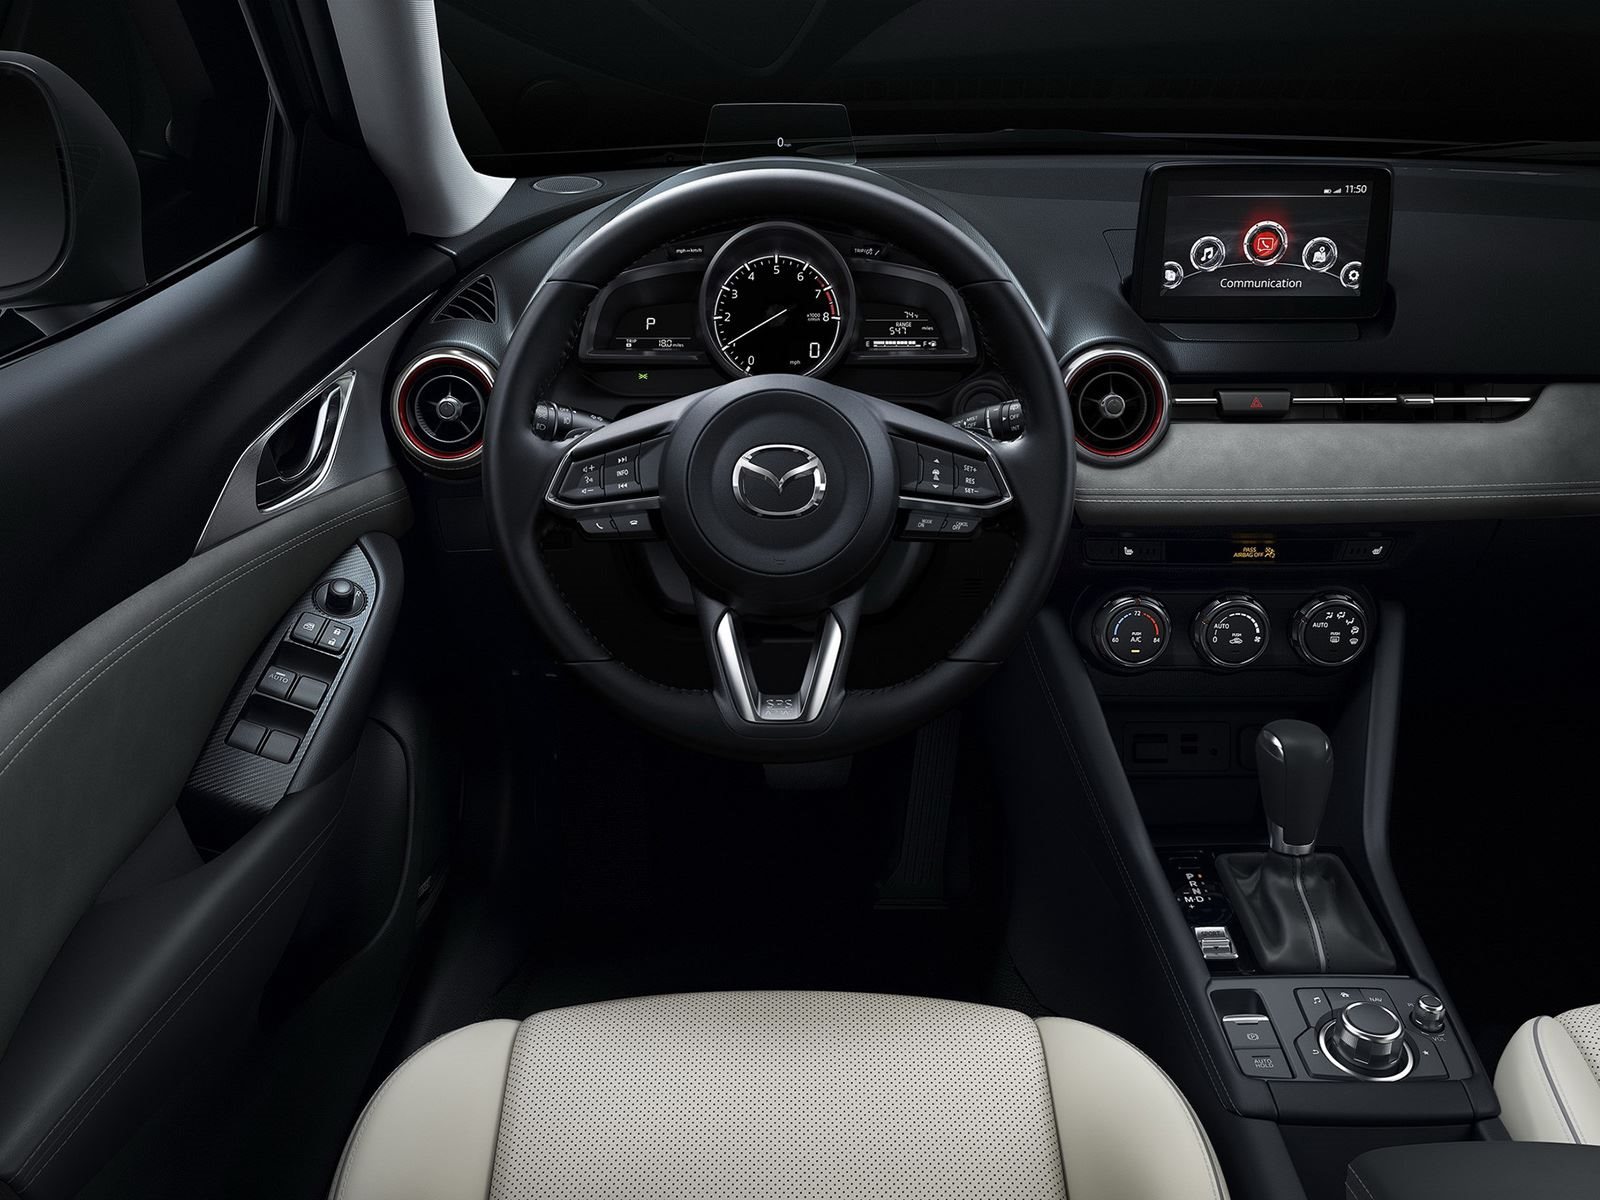 Mazda заявила, что перенастроила двигатель для увеличения крутящего момента, повышения эффективности использования топлива и снижения внутреннего трения. В дополнение к пересмотренному движку используется технология управления G-Vectoring Control от 